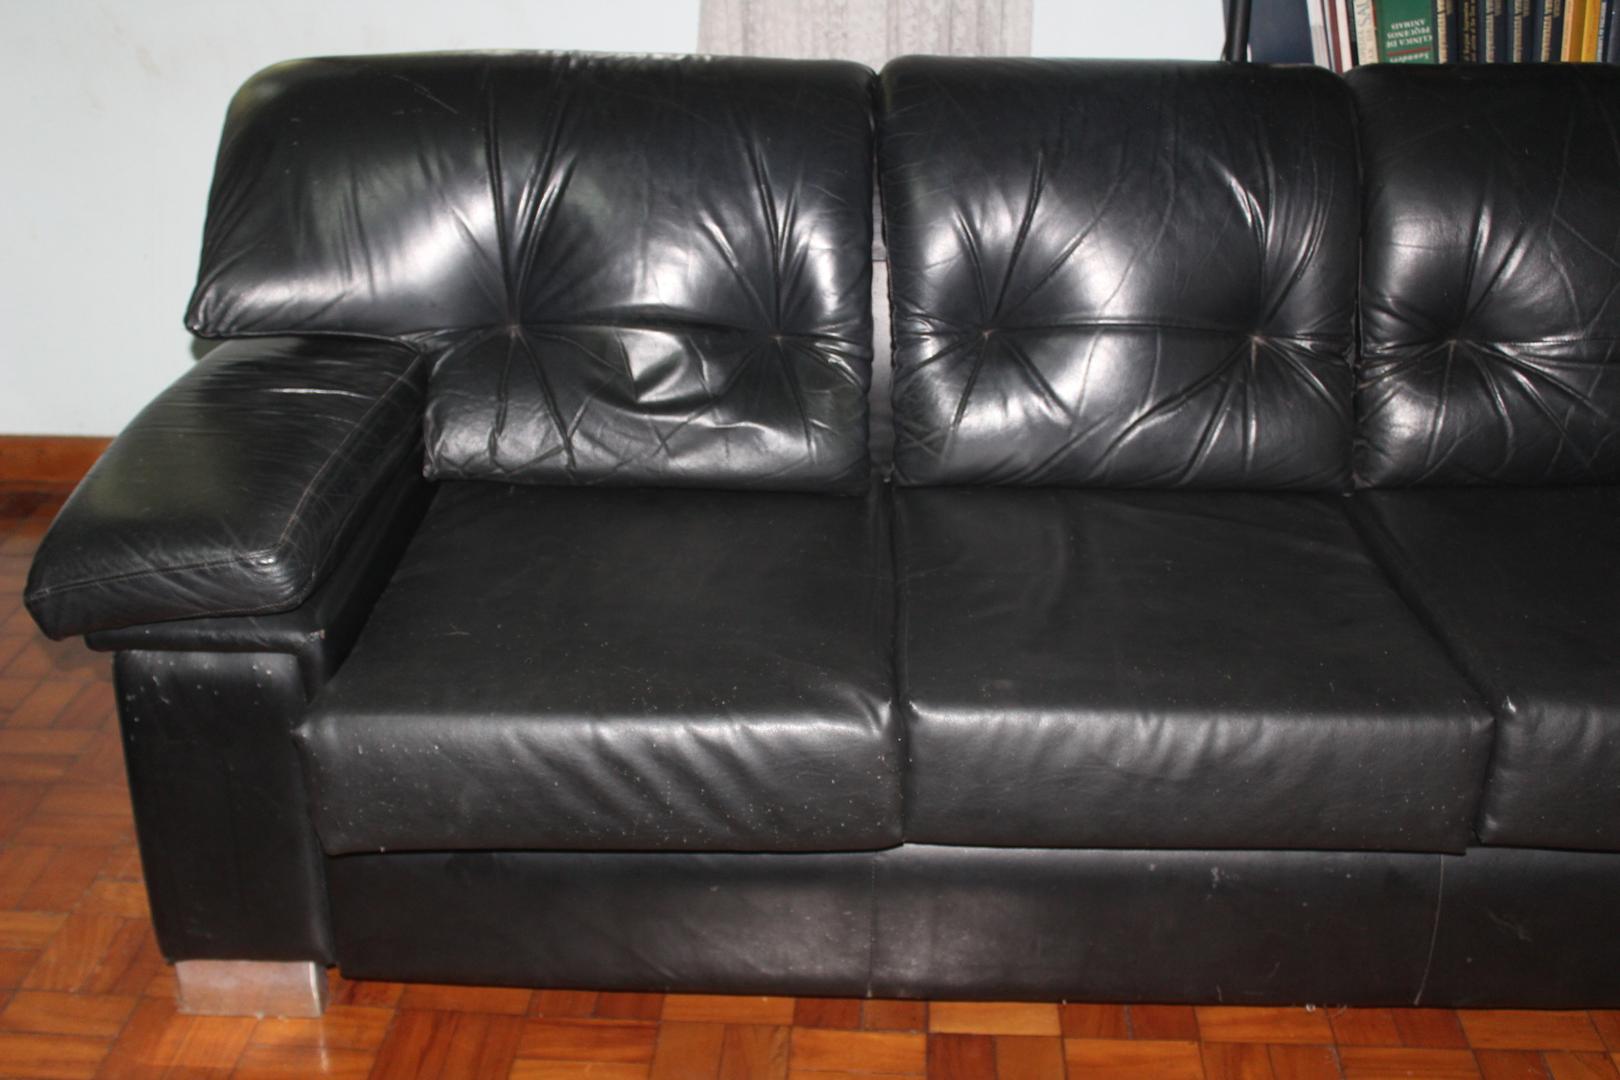 Sofa c/ 3 Lugares em Couro / Estofado Preto 85 cm x 220 cm x 87 cm